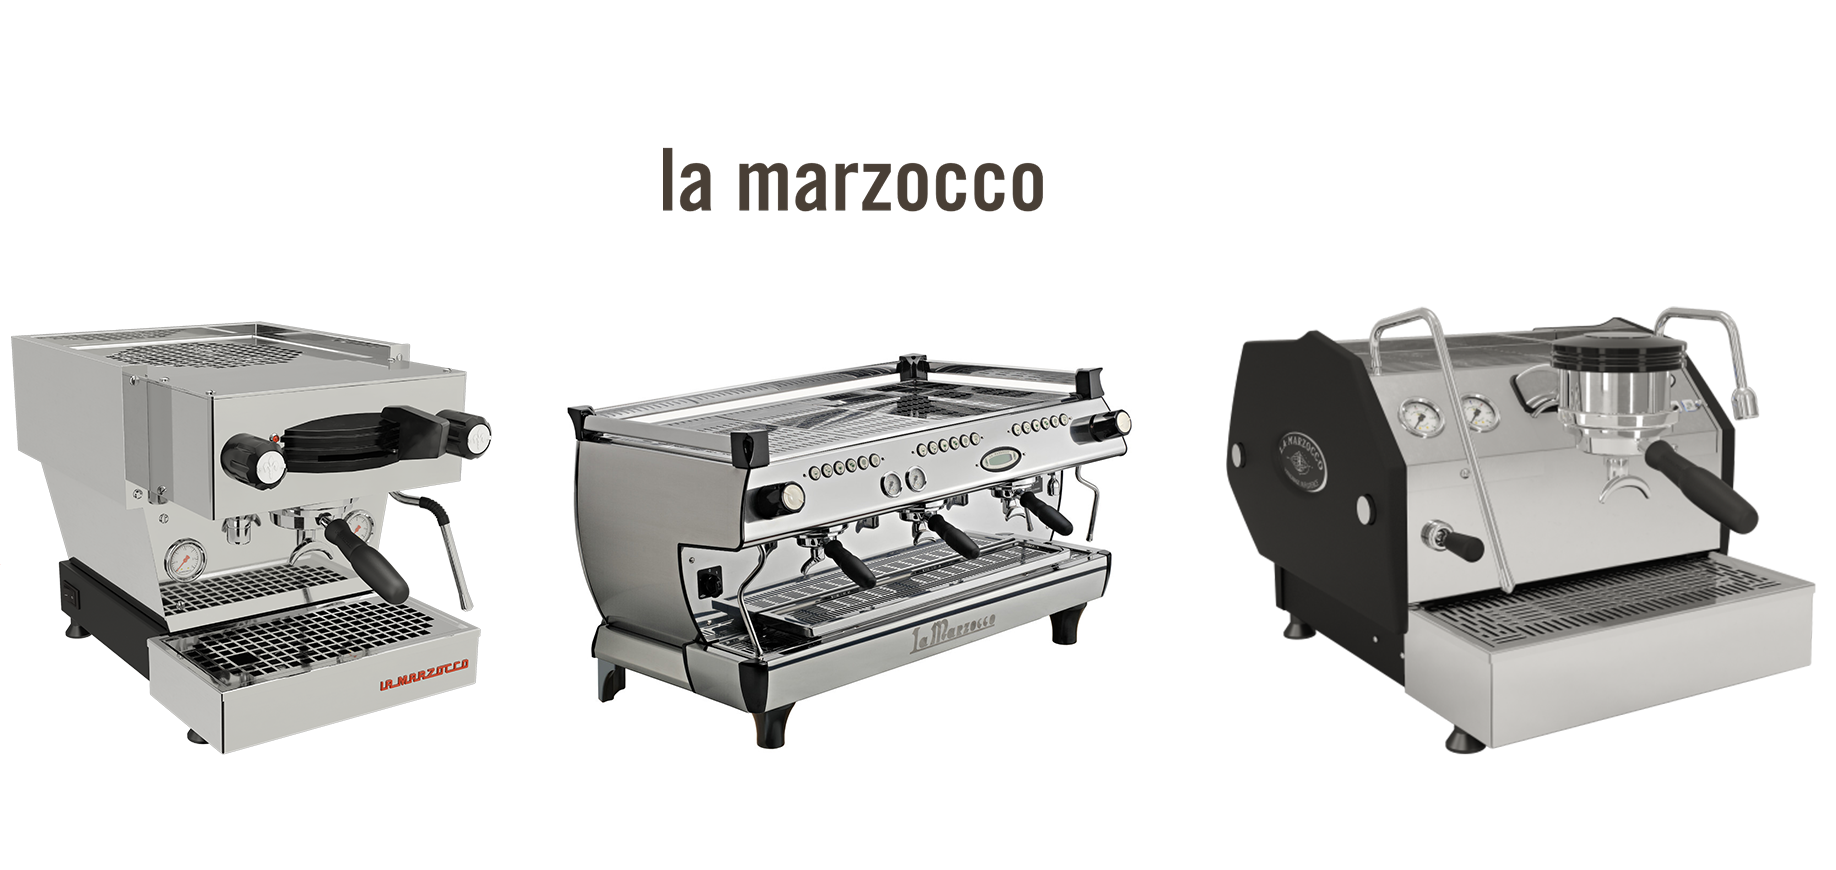 ماهي افضل ماكينة قهوة لامارزوكو وكيف تختارها؟